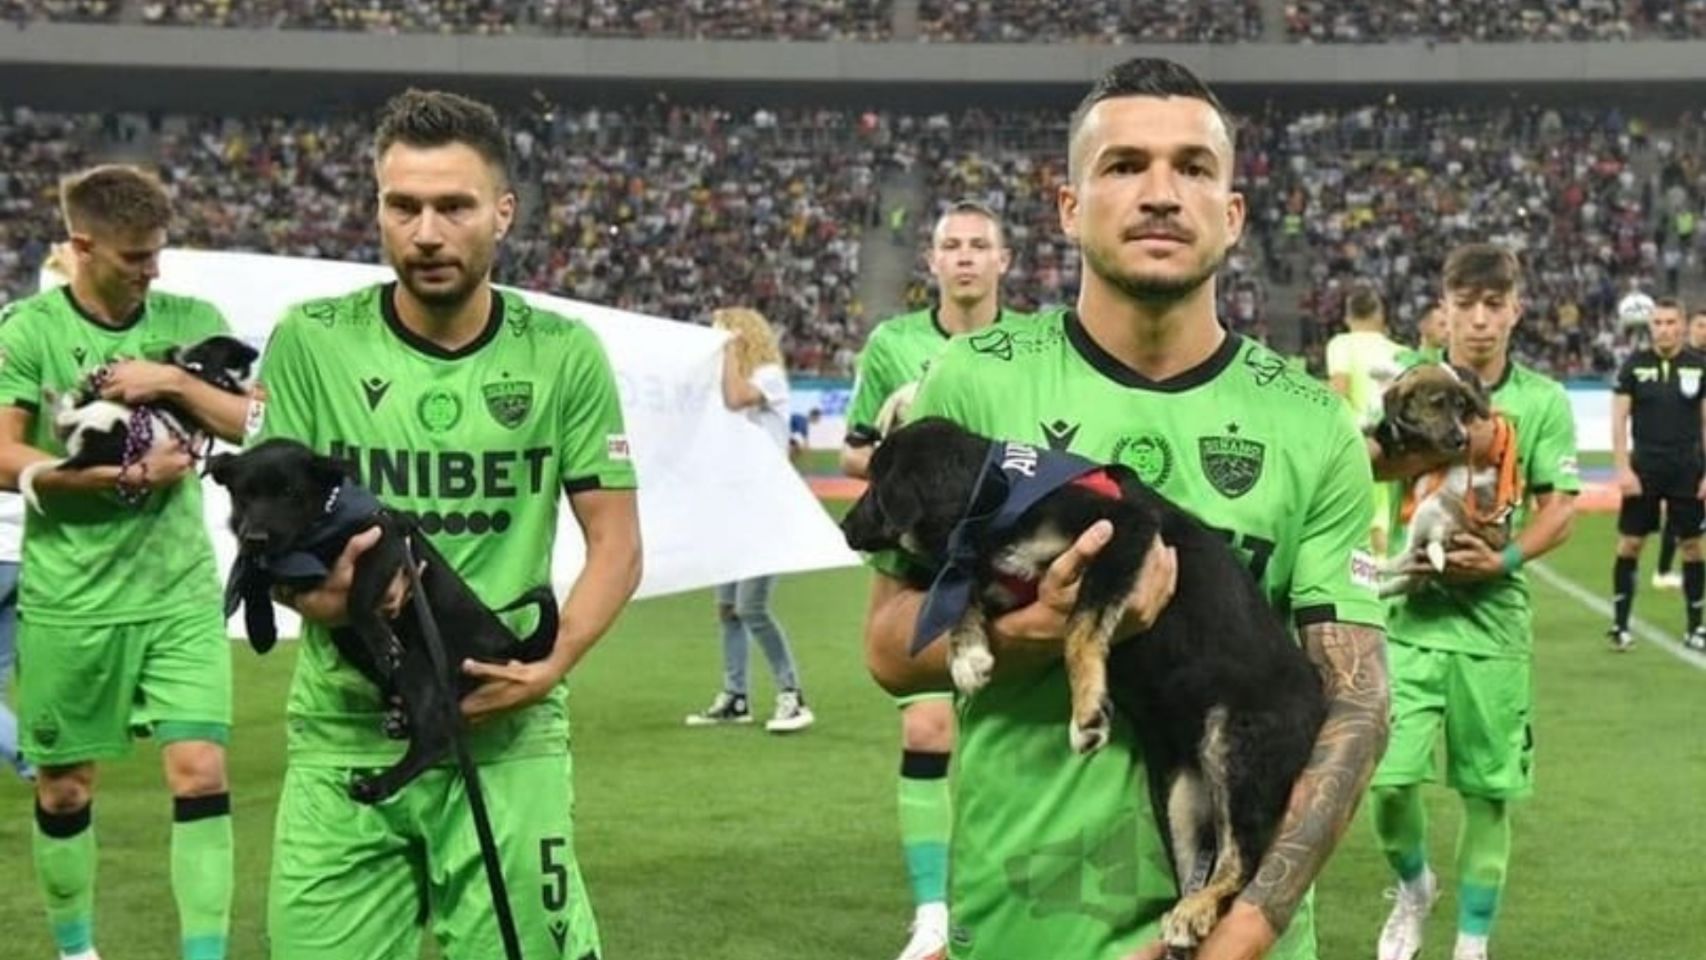 Jugadores de la liga Rumana de fútbol salieron al campo con perros para fomentar su adopción (Facebook Save the dogs and other animals)